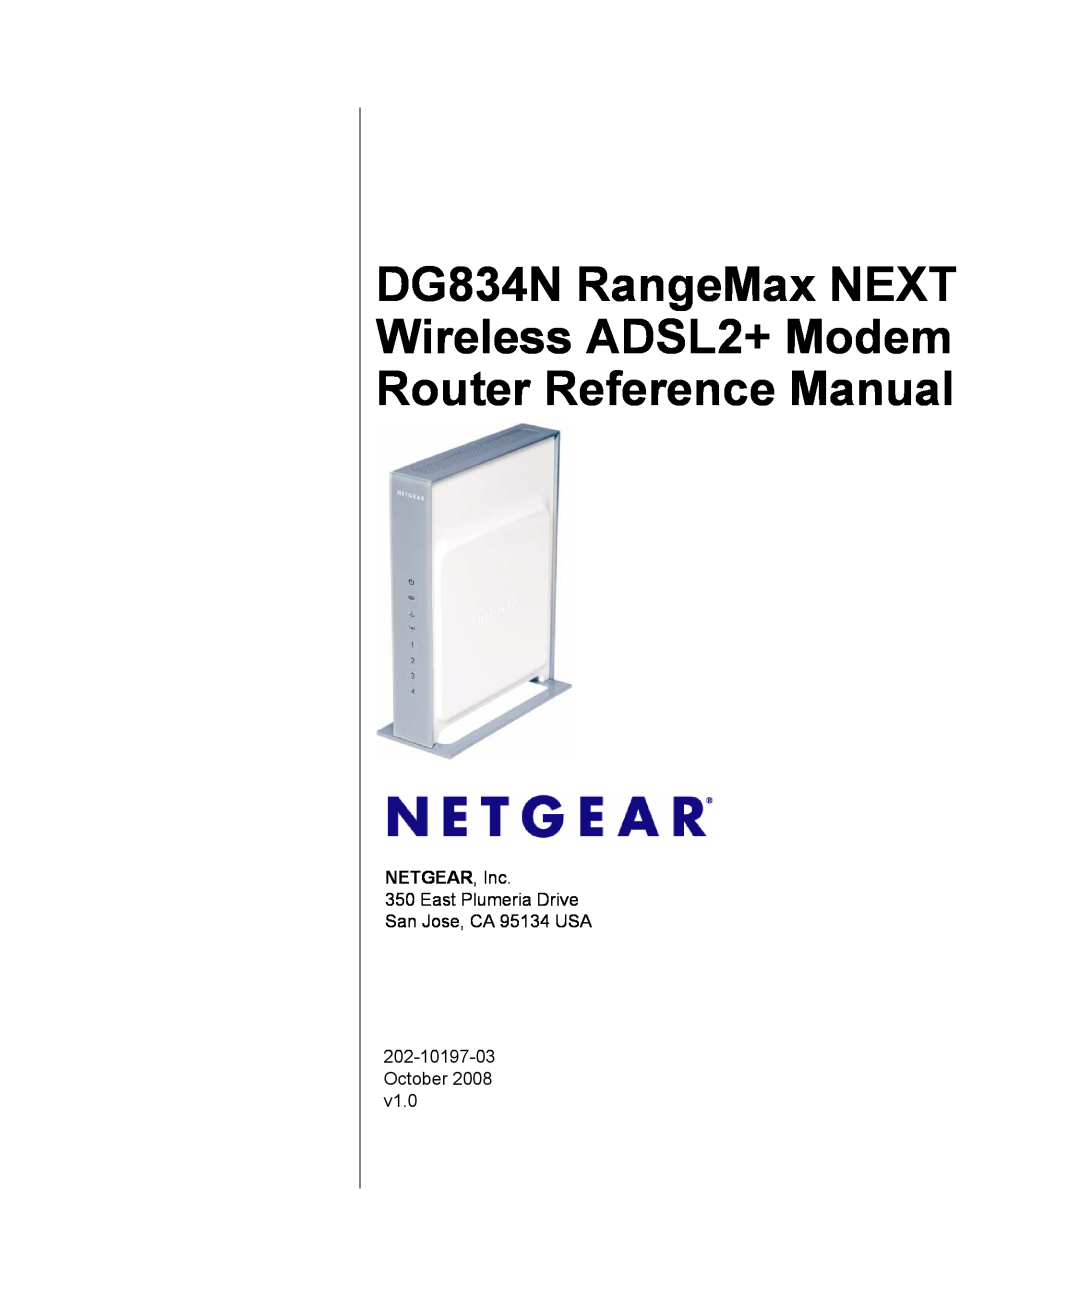 NETGEAR manual DG834N RangeMax NEXT Wireless ADSL2+ Modem Router Reference Manual, NETGEAR, Inc 